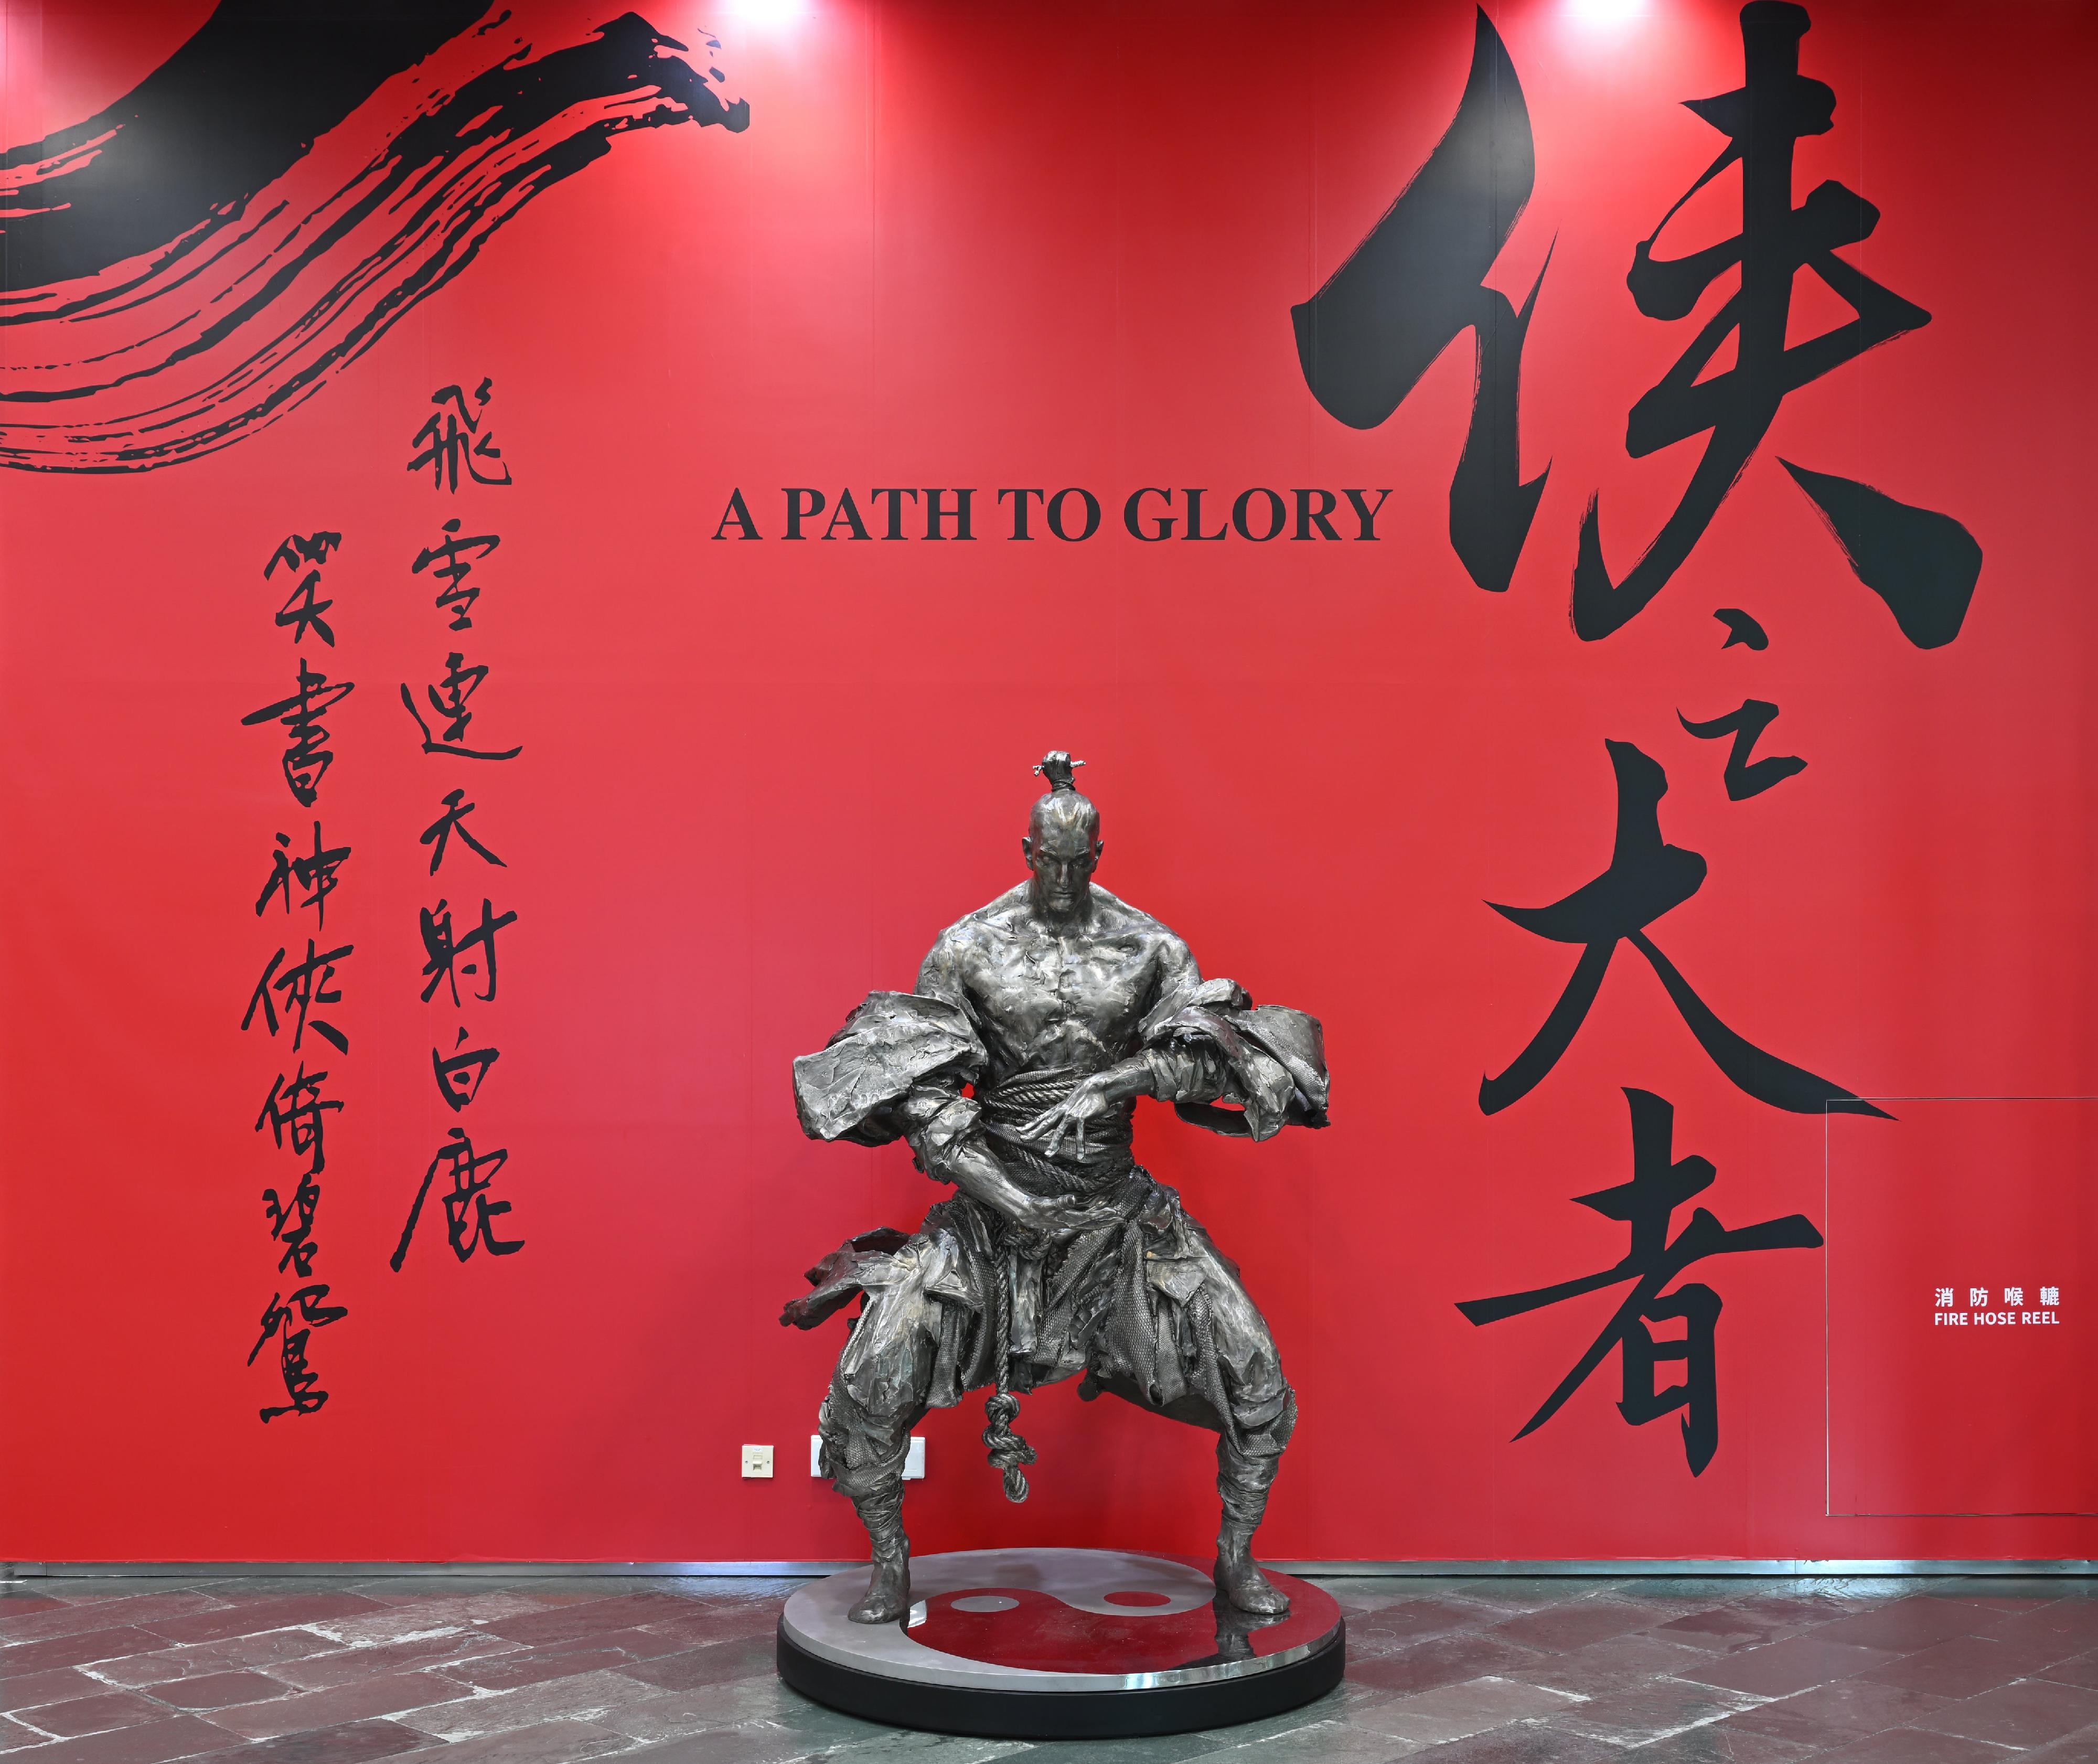 香港文化博物館為紀念查良鏞博士（金庸）百年誕辰，即將舉行「俠之大者—金庸百年誕辰紀念．任哲雕塑展」，展期由三月十六日至十月七日。